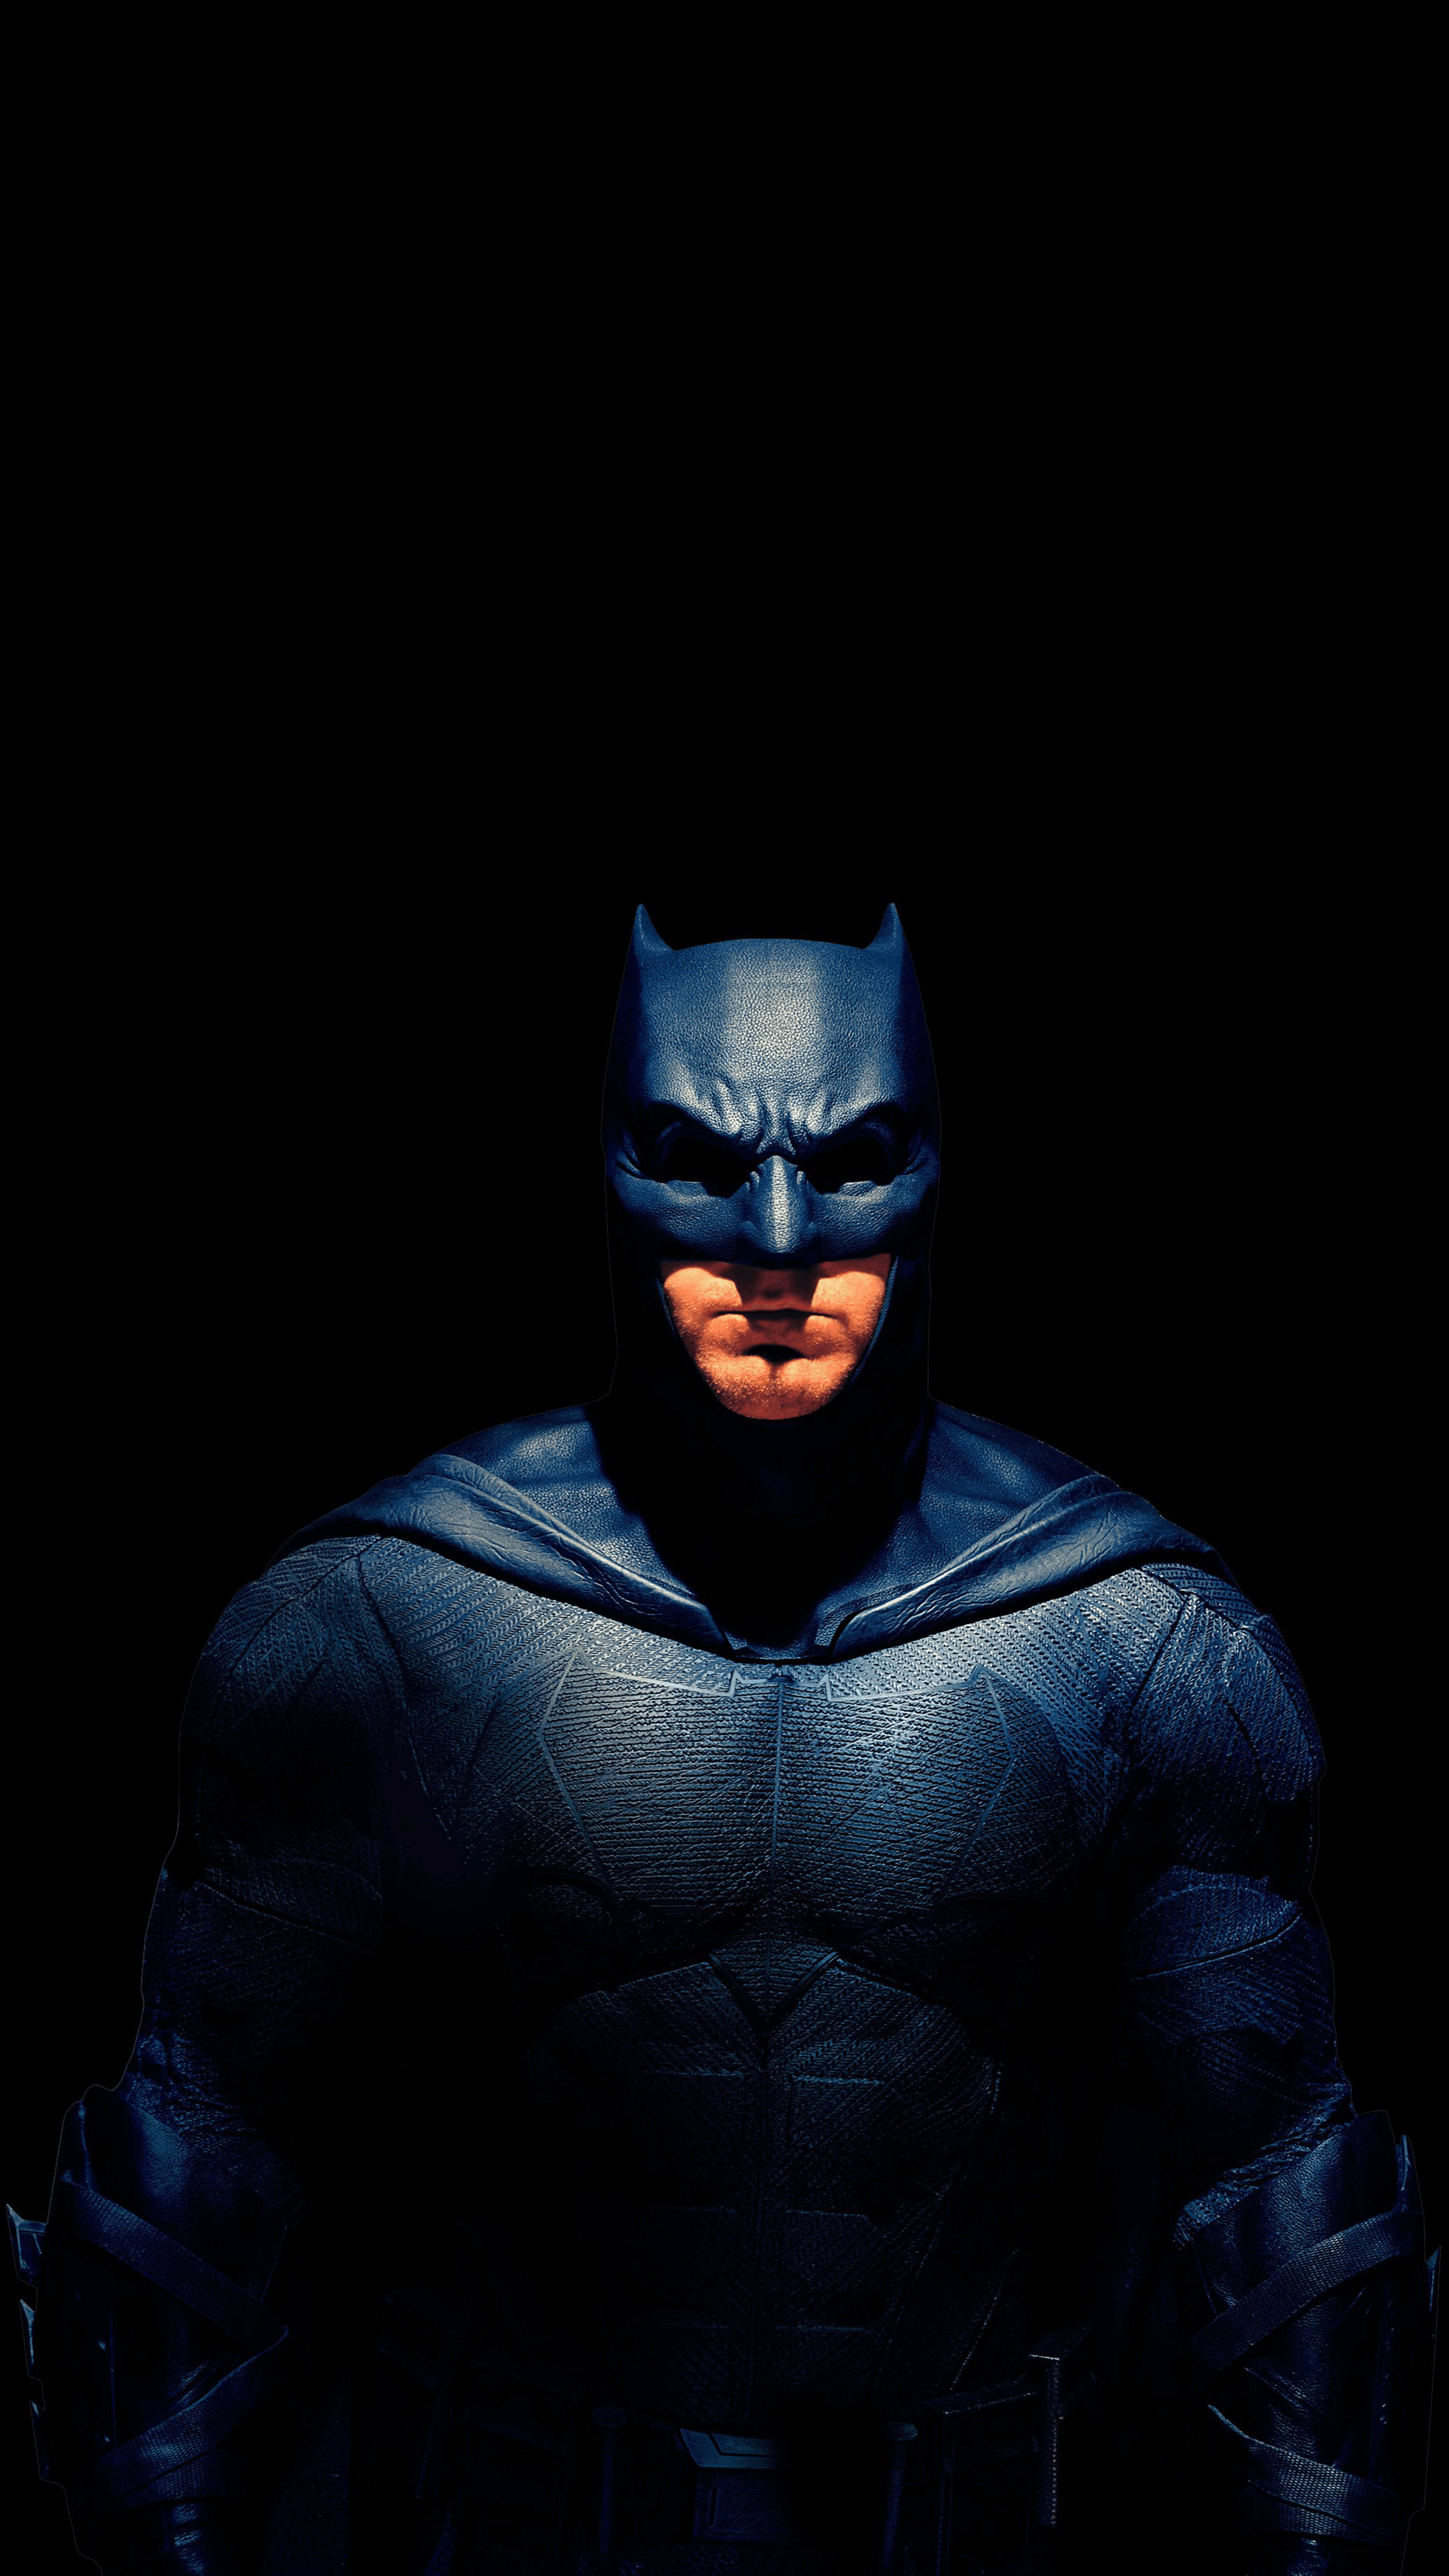 Hình nền điện thoại 4k kết hợp với chủ đề Batman sẽ làm bạn cảm thấy như mình đang sở hữu một chiếc điện thoại đẳng cấp. Hãy thưởng thức những hình nền đầy sáng tạo và bắt mắt này để tăng thêm lòng tin vào sự mạnh mẽ của mình.